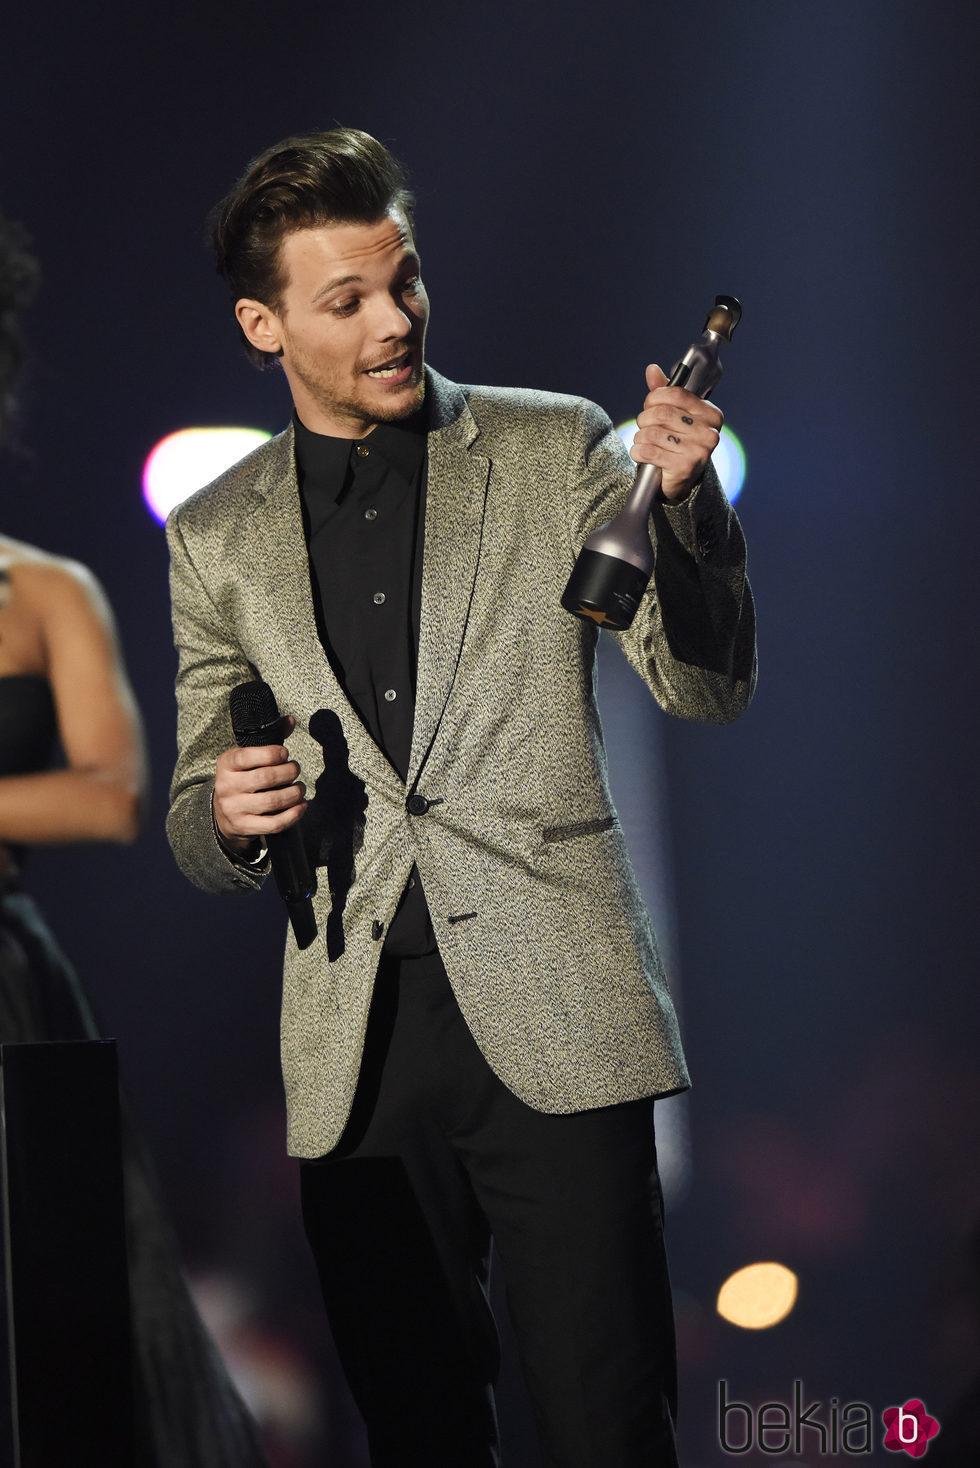 Louis Tomlinson recogiendo el Premio Brit 2016 de One Direction